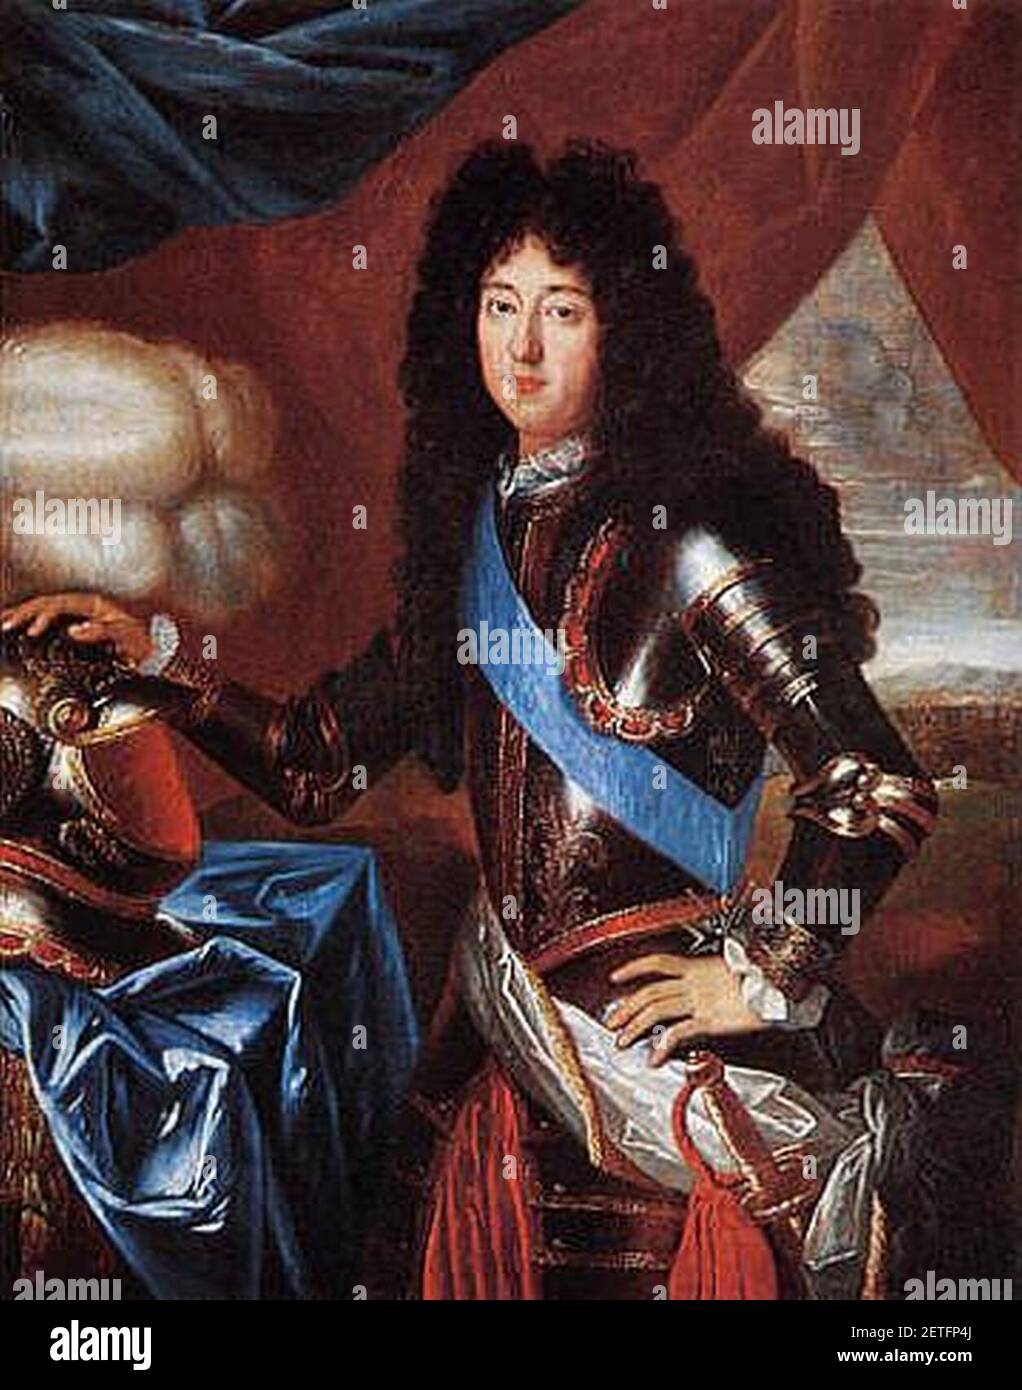 Philippe de France, duc d'Orléans, 'Monsieur', portant la ceinture de l'ordre du Saint-Esprit Banque D'Images